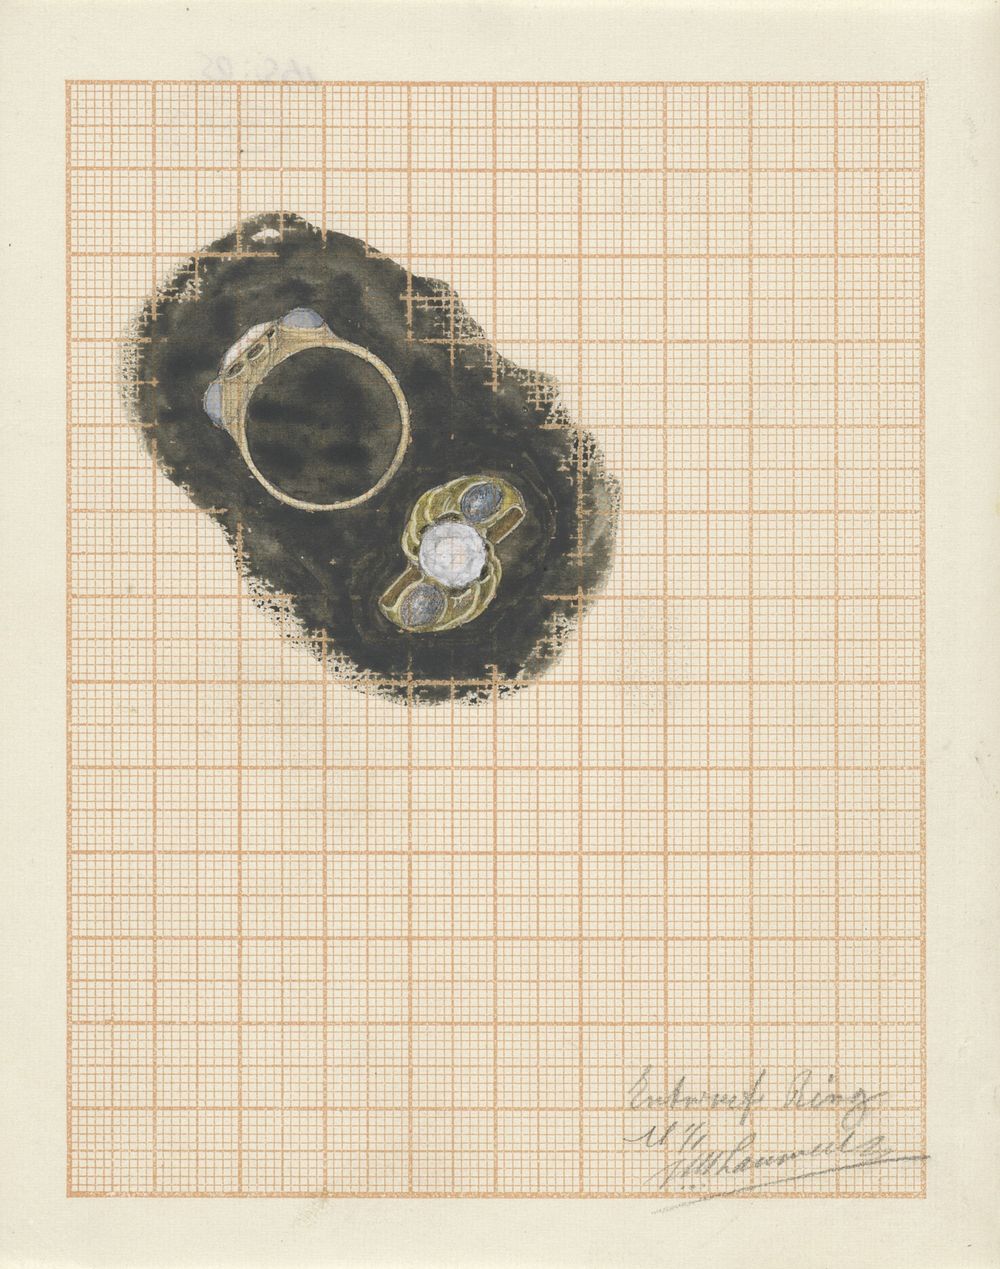 Ontwerp voor een ring (1874 - 1932) by Mathieu Lauweriks